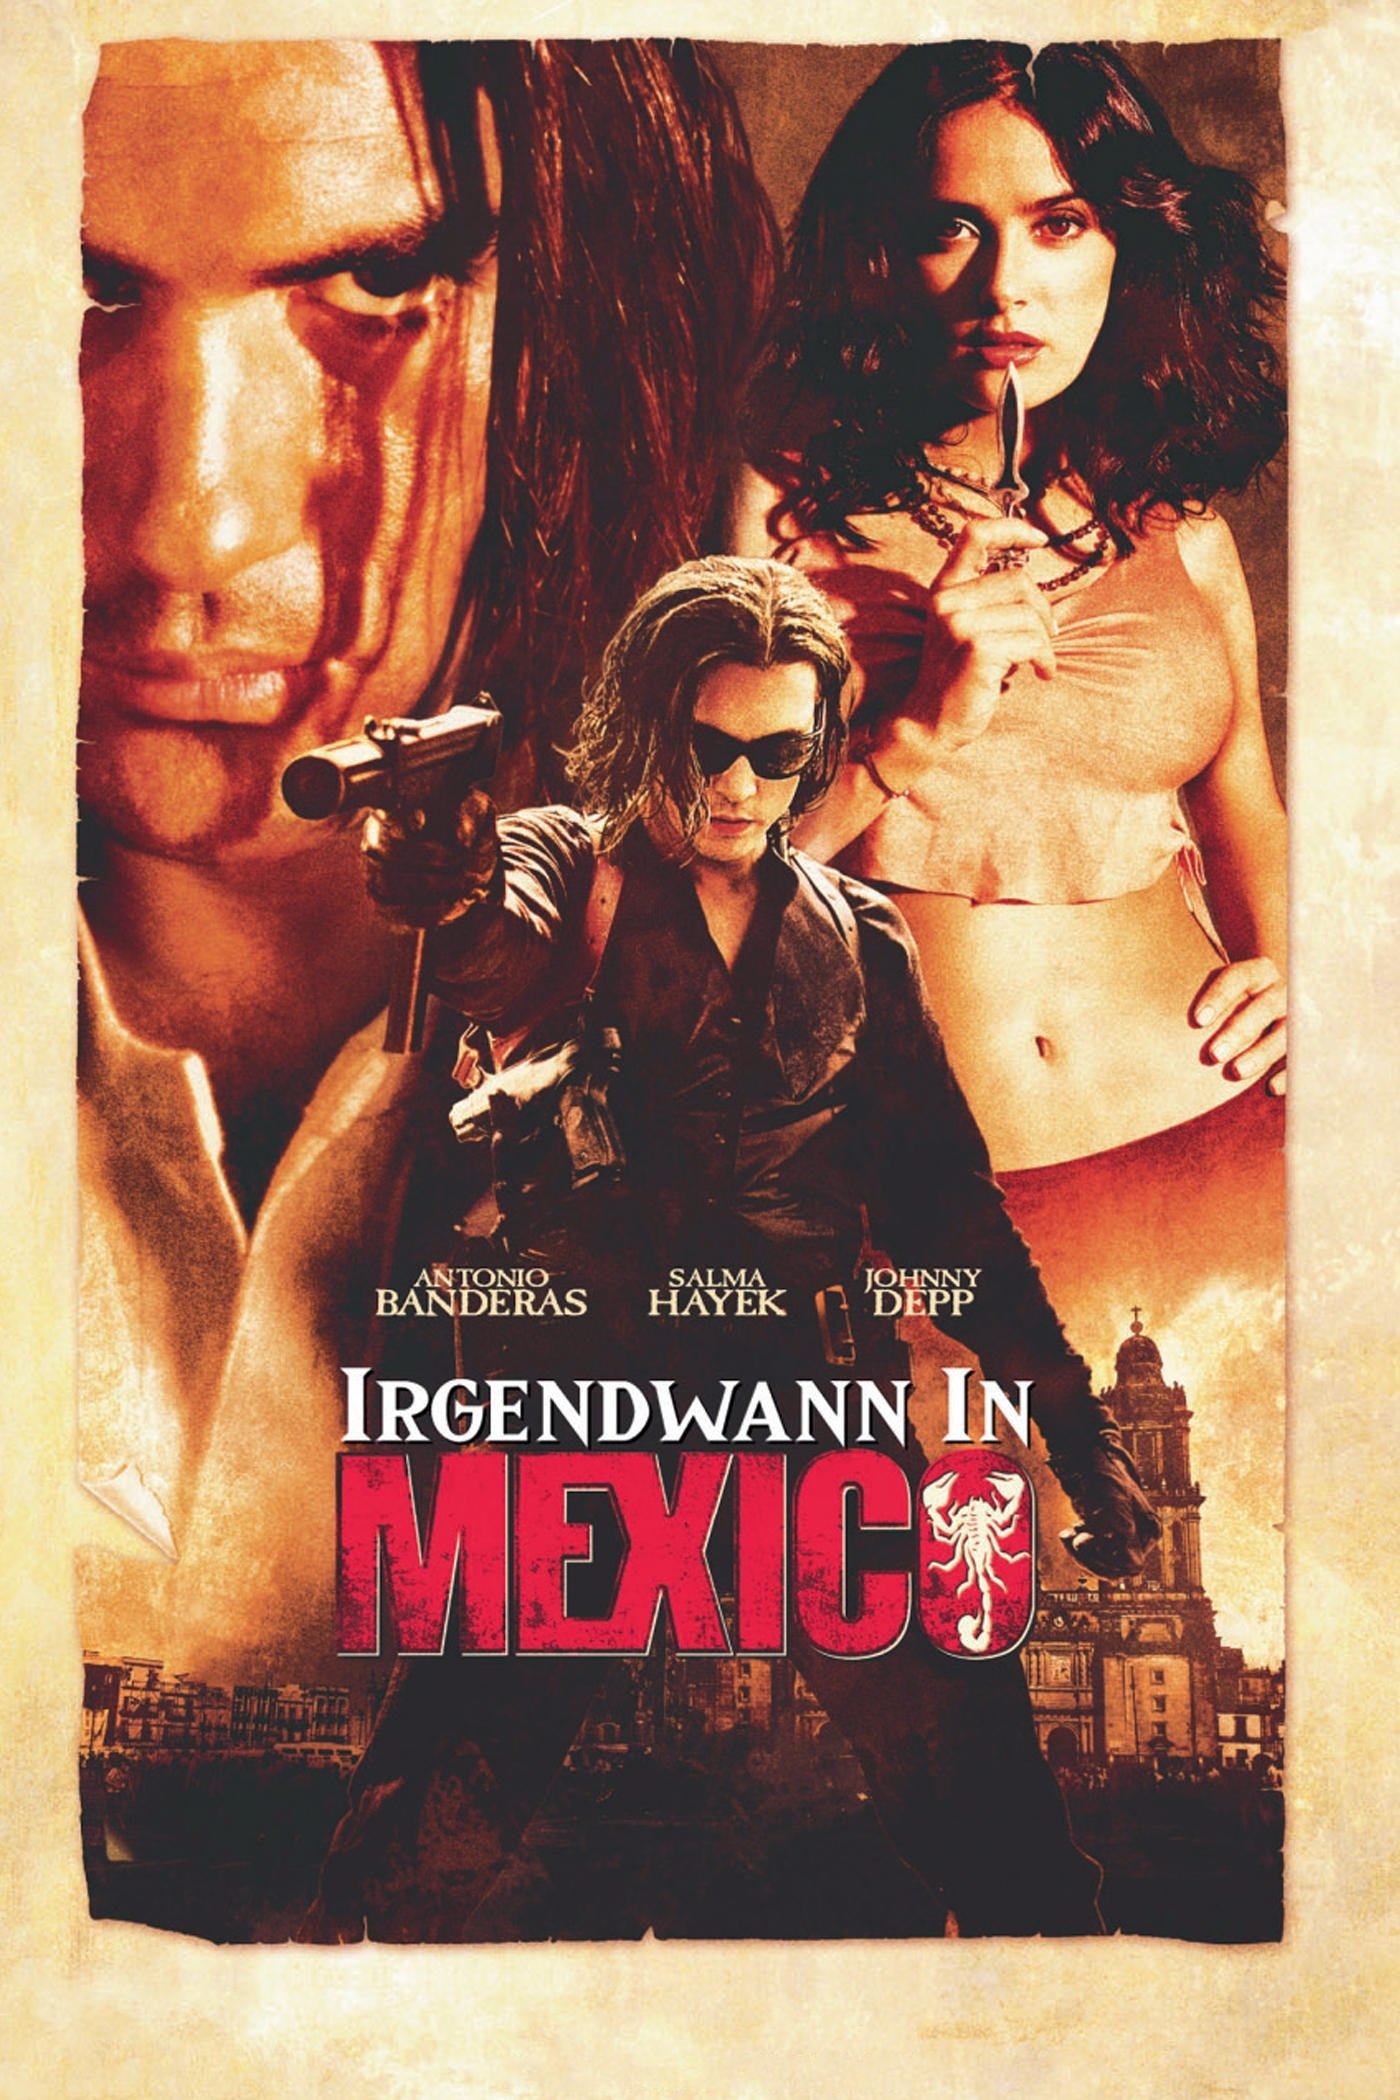 Plakat von "Irgendwann in Mexico"